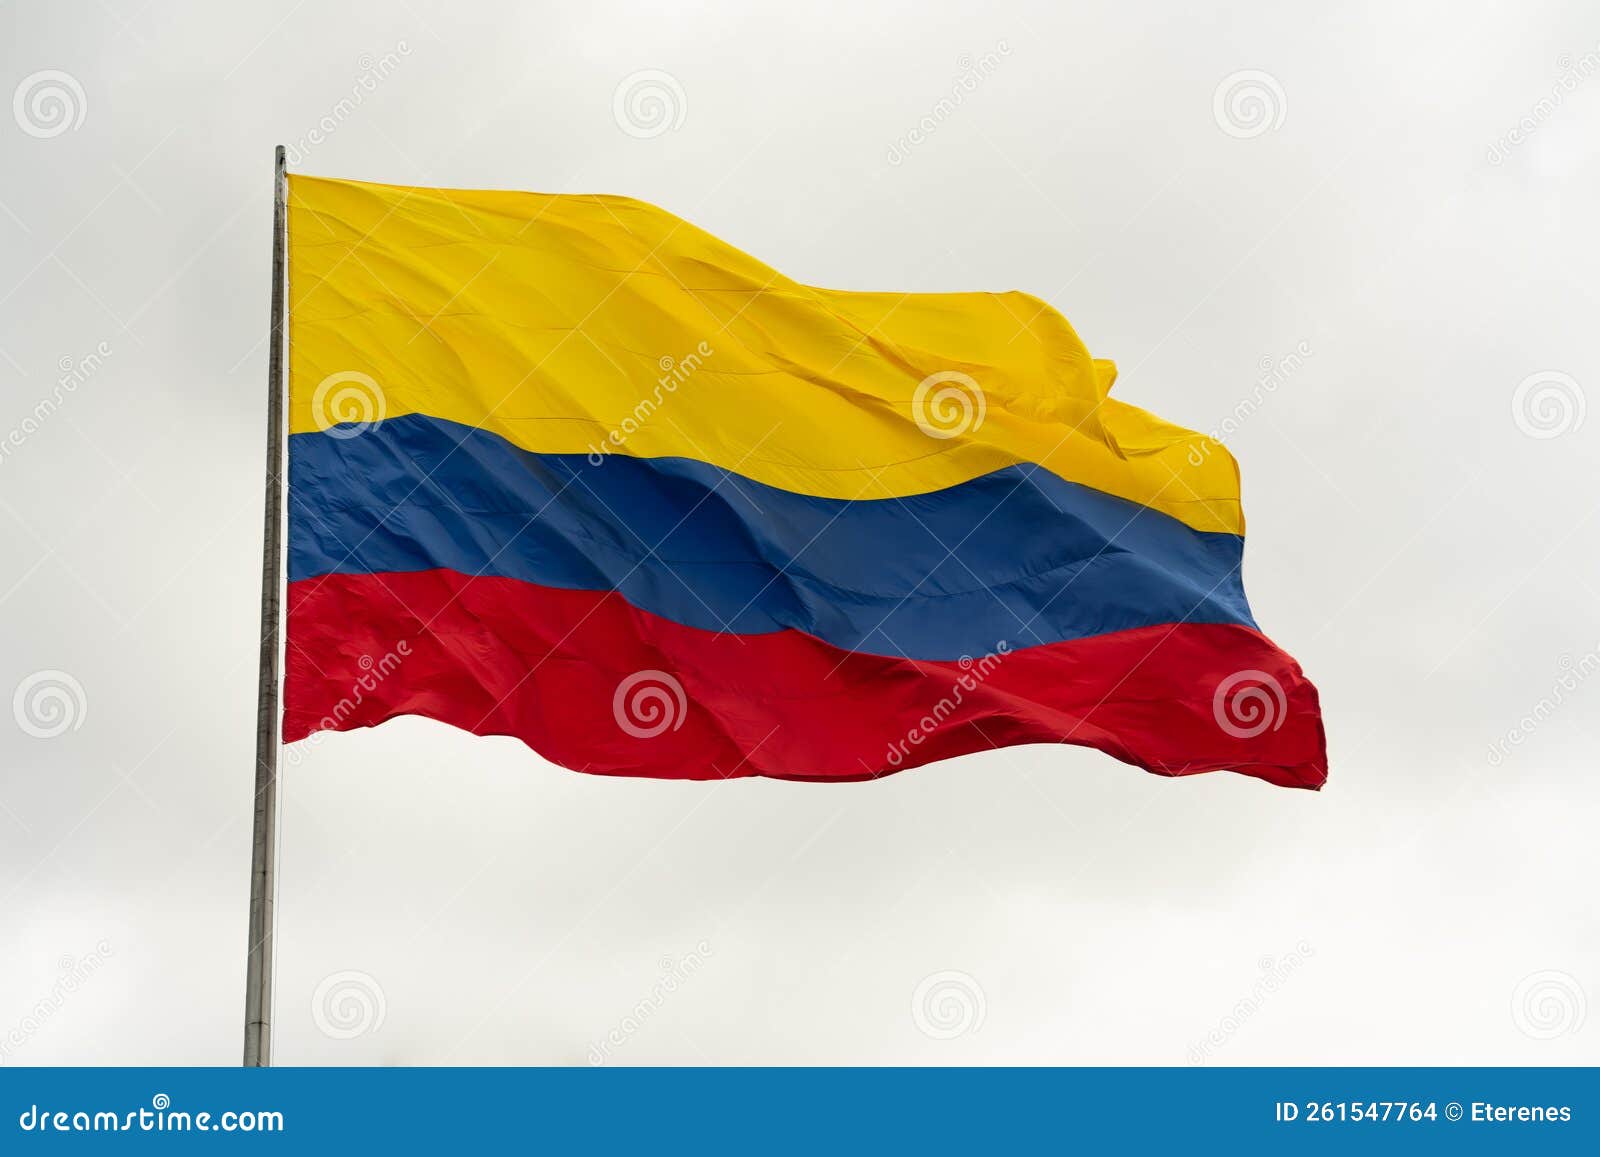 resultados de traducciÃÂ³n national flag of colombia waving.